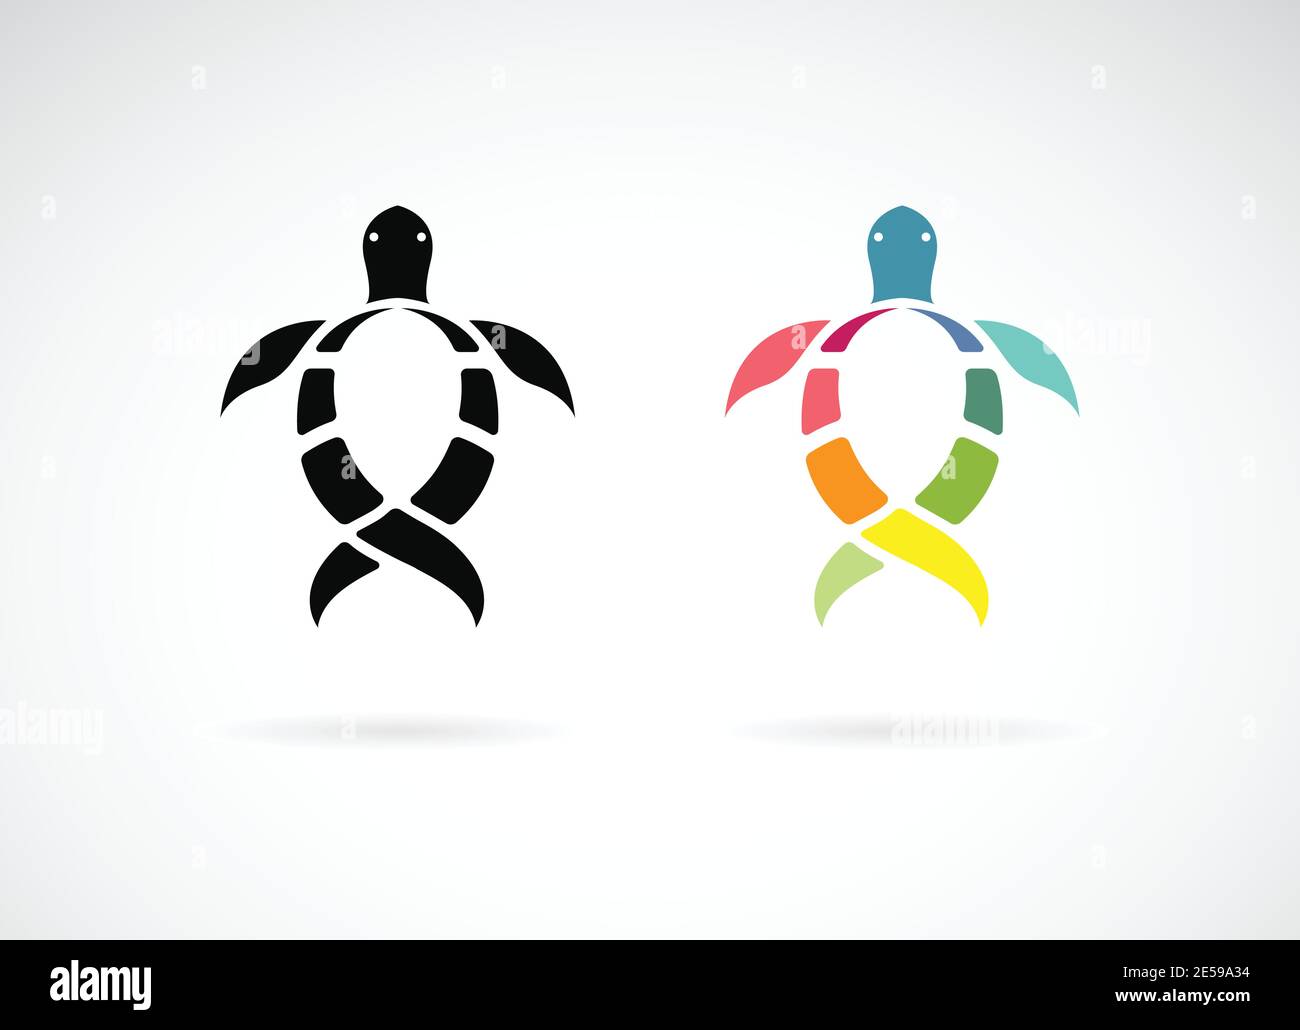 Vektor von Schildkröte Design auf weißem Hintergrund. Wilde Tiere. Unterwasser Tier. Schildkröten Symbol oder Logo. Leicht editierbare Vektorgrafik mit Ebenen. Stock Vektor